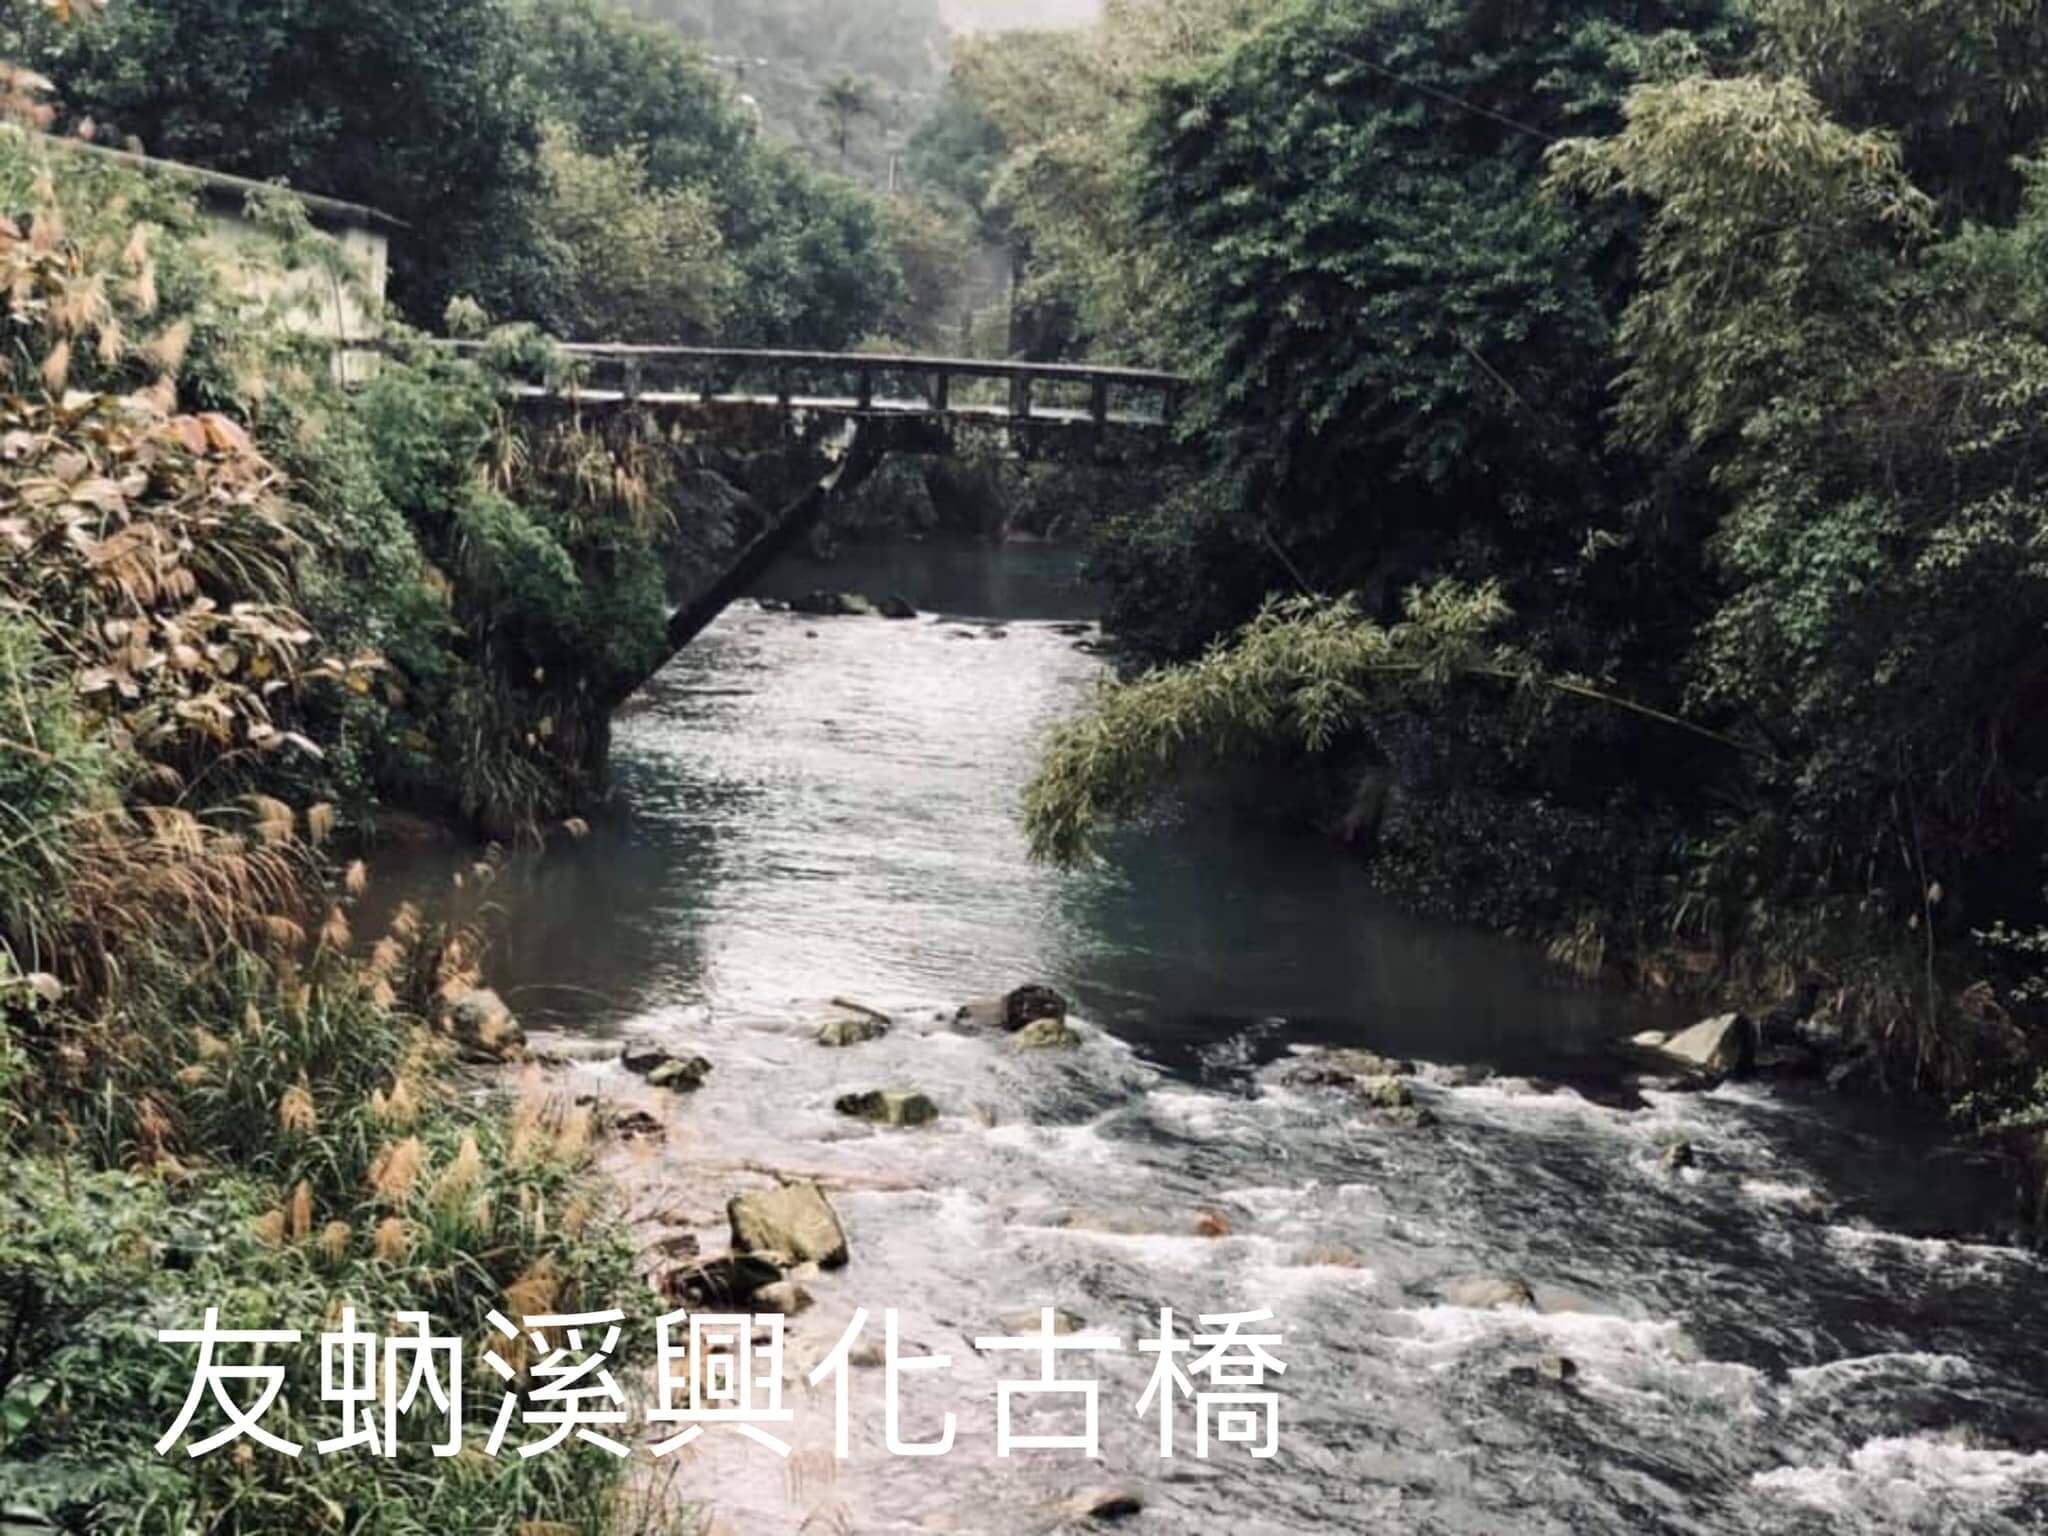 友蚋溪興化古橋